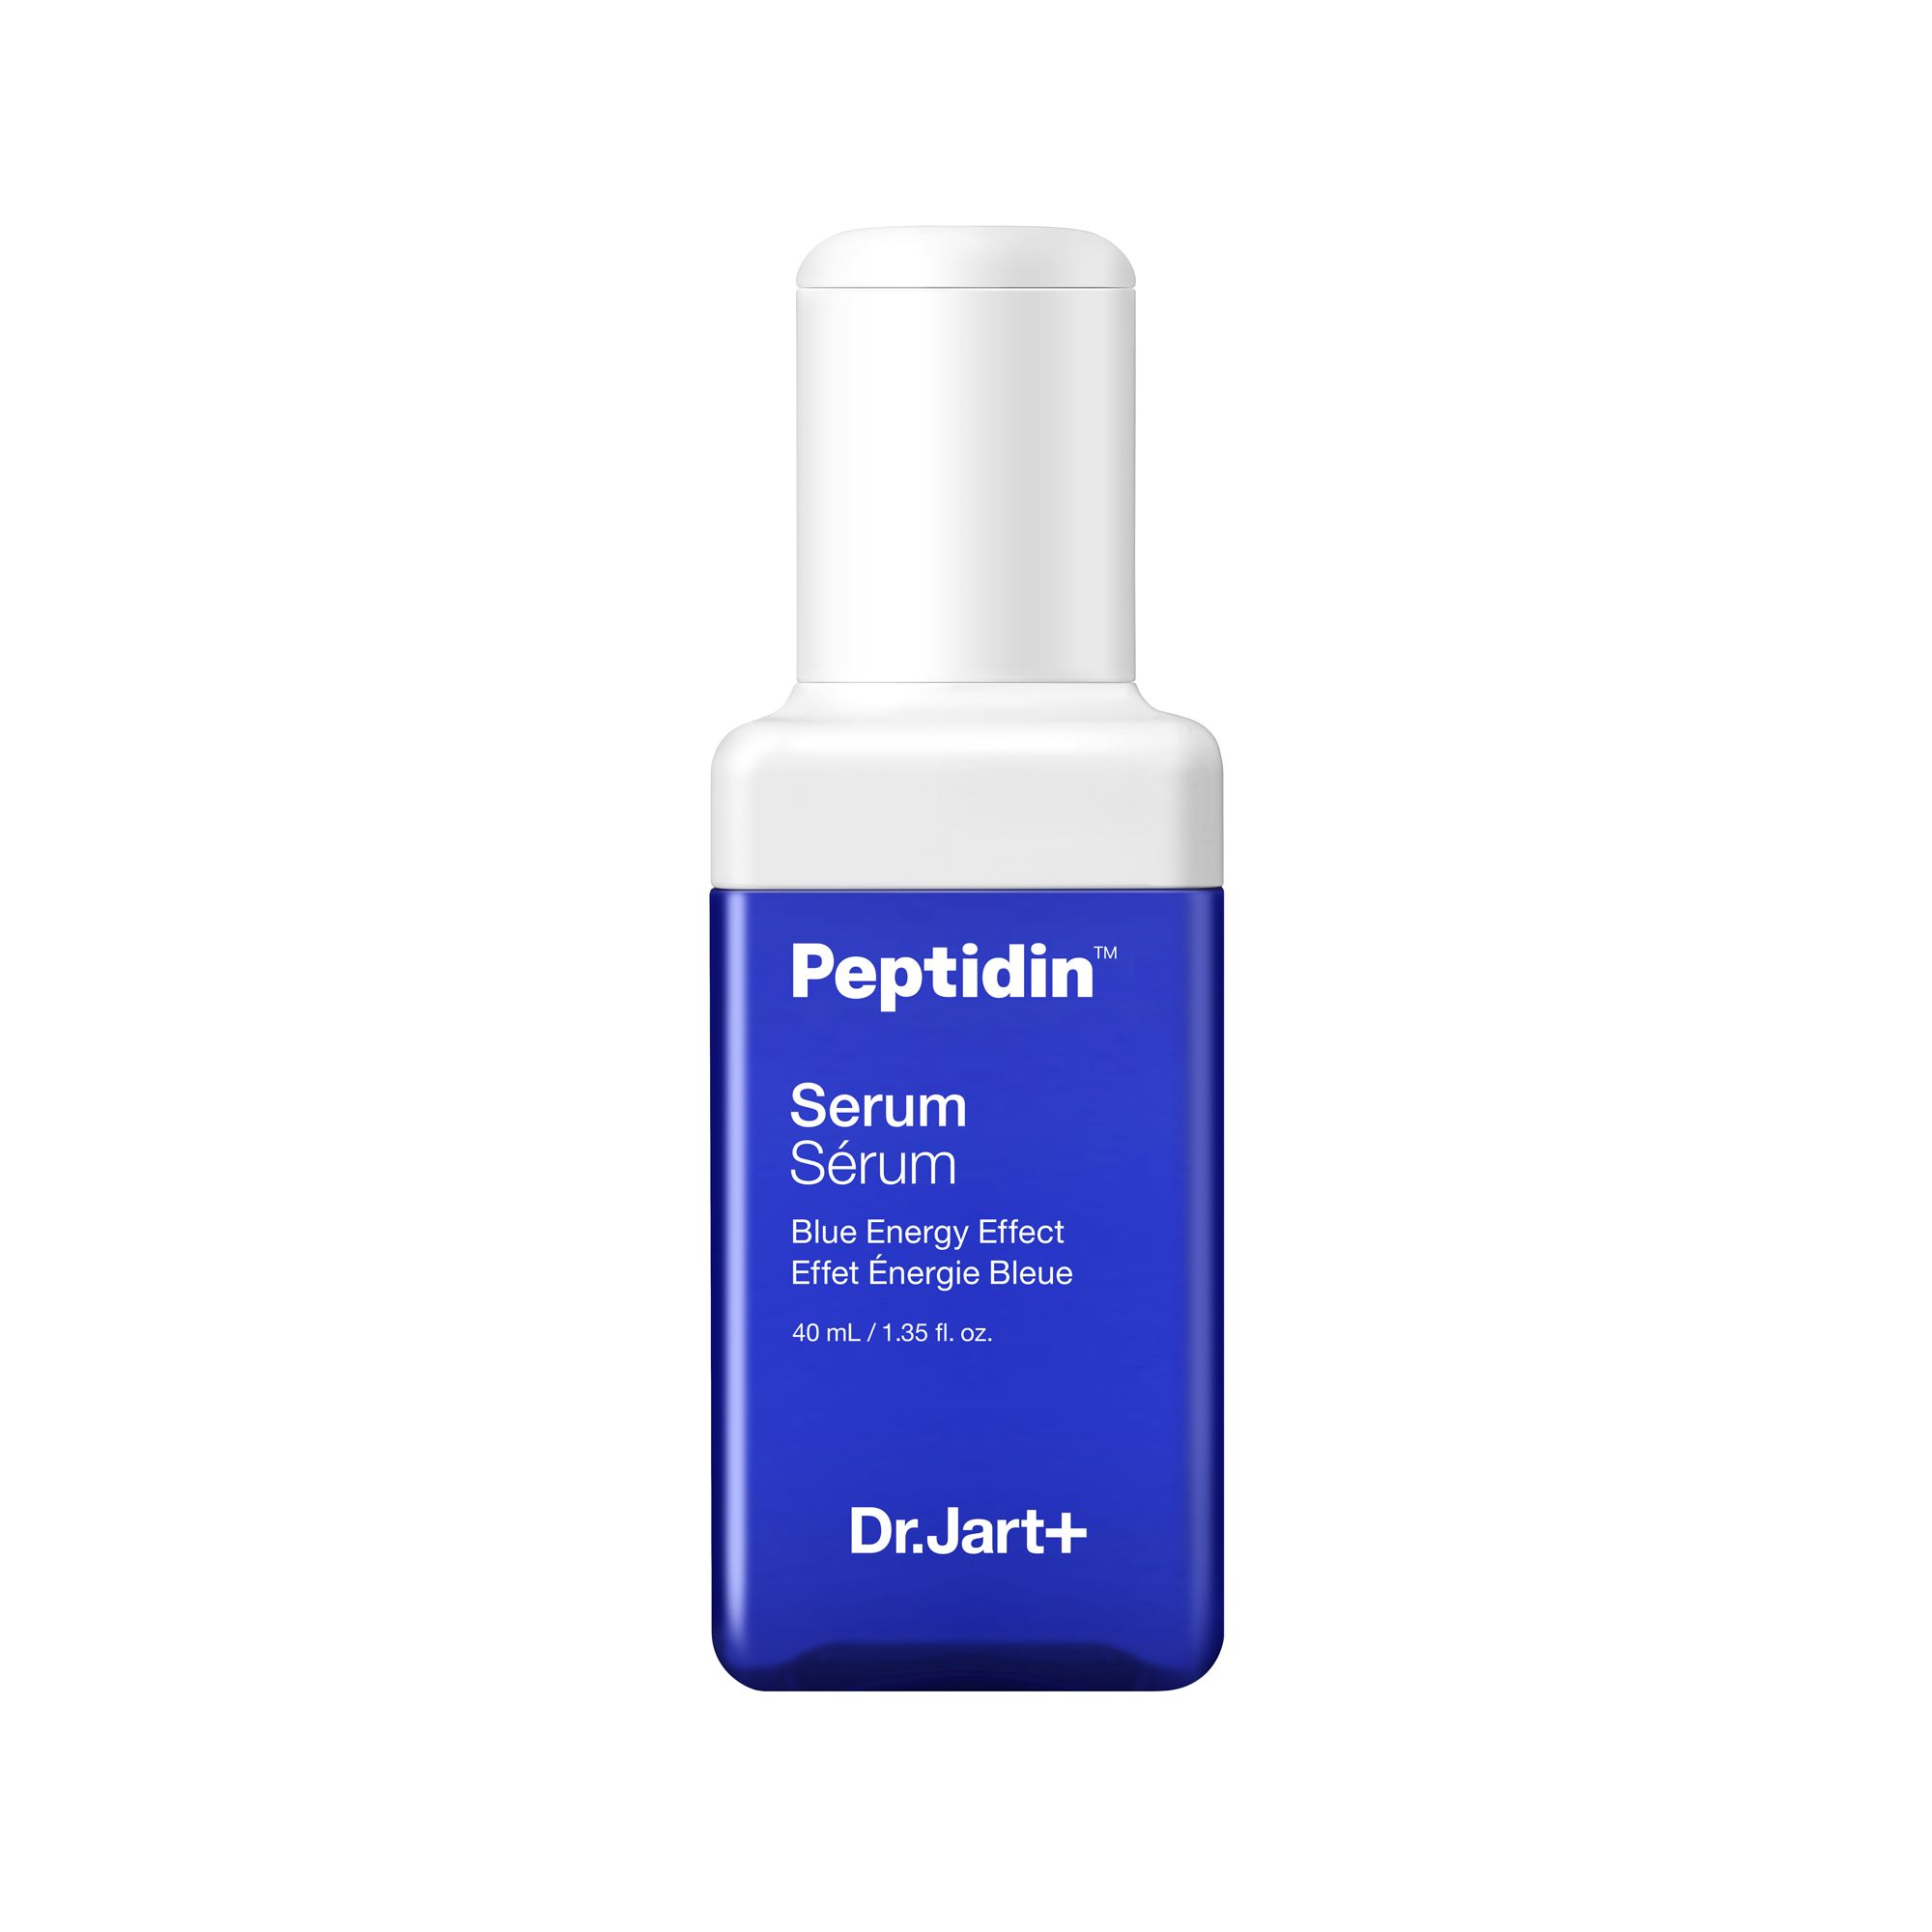 Dr.Jart+ Peptidin serum Blue energy effect сыворотка для лица Интенсивное увлажнение лифтинг и плотность, 40 мл